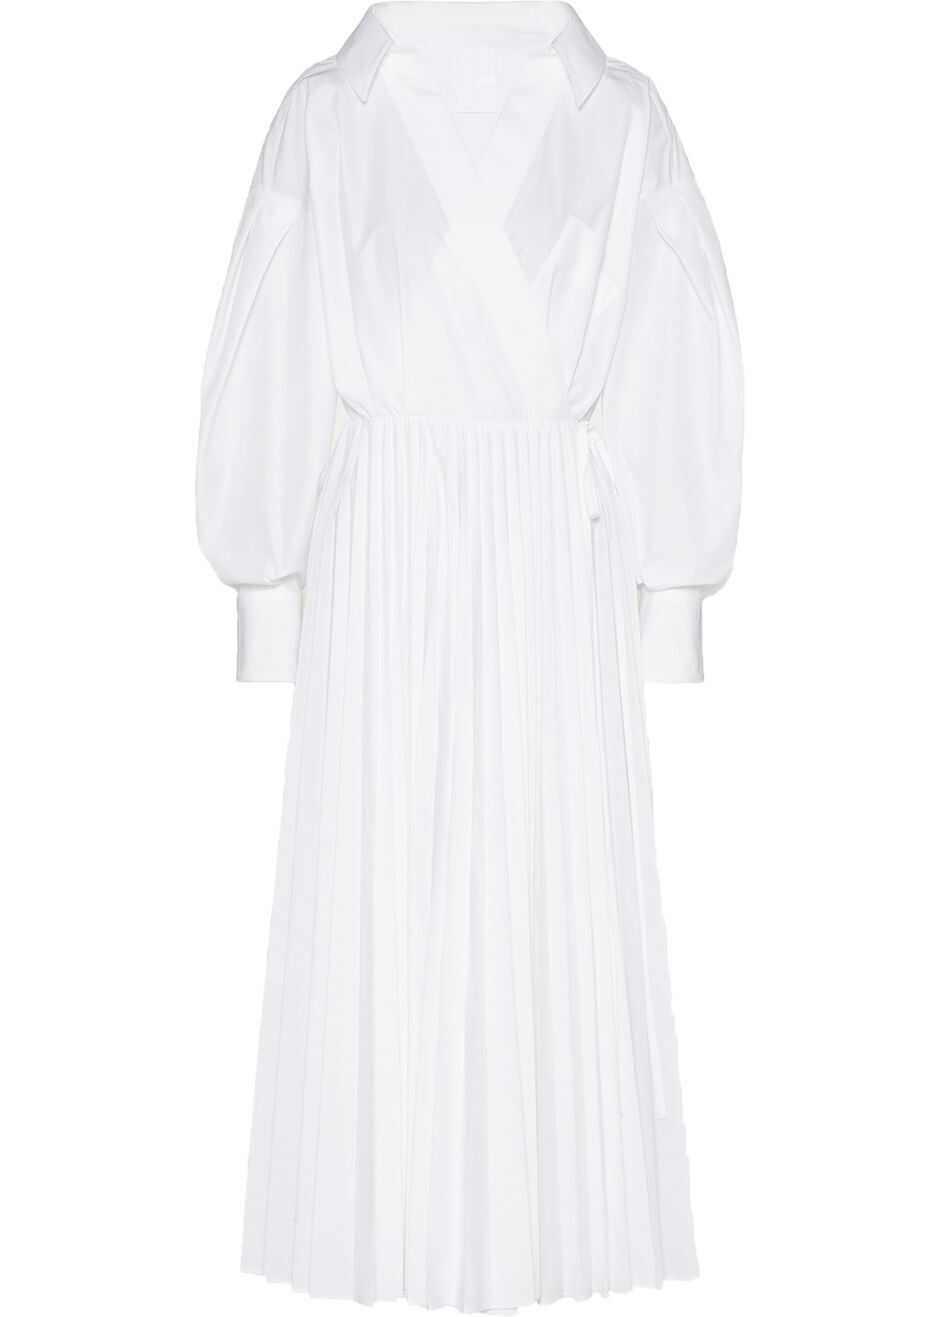 Valentino Garavani Technical Poplin Dress White